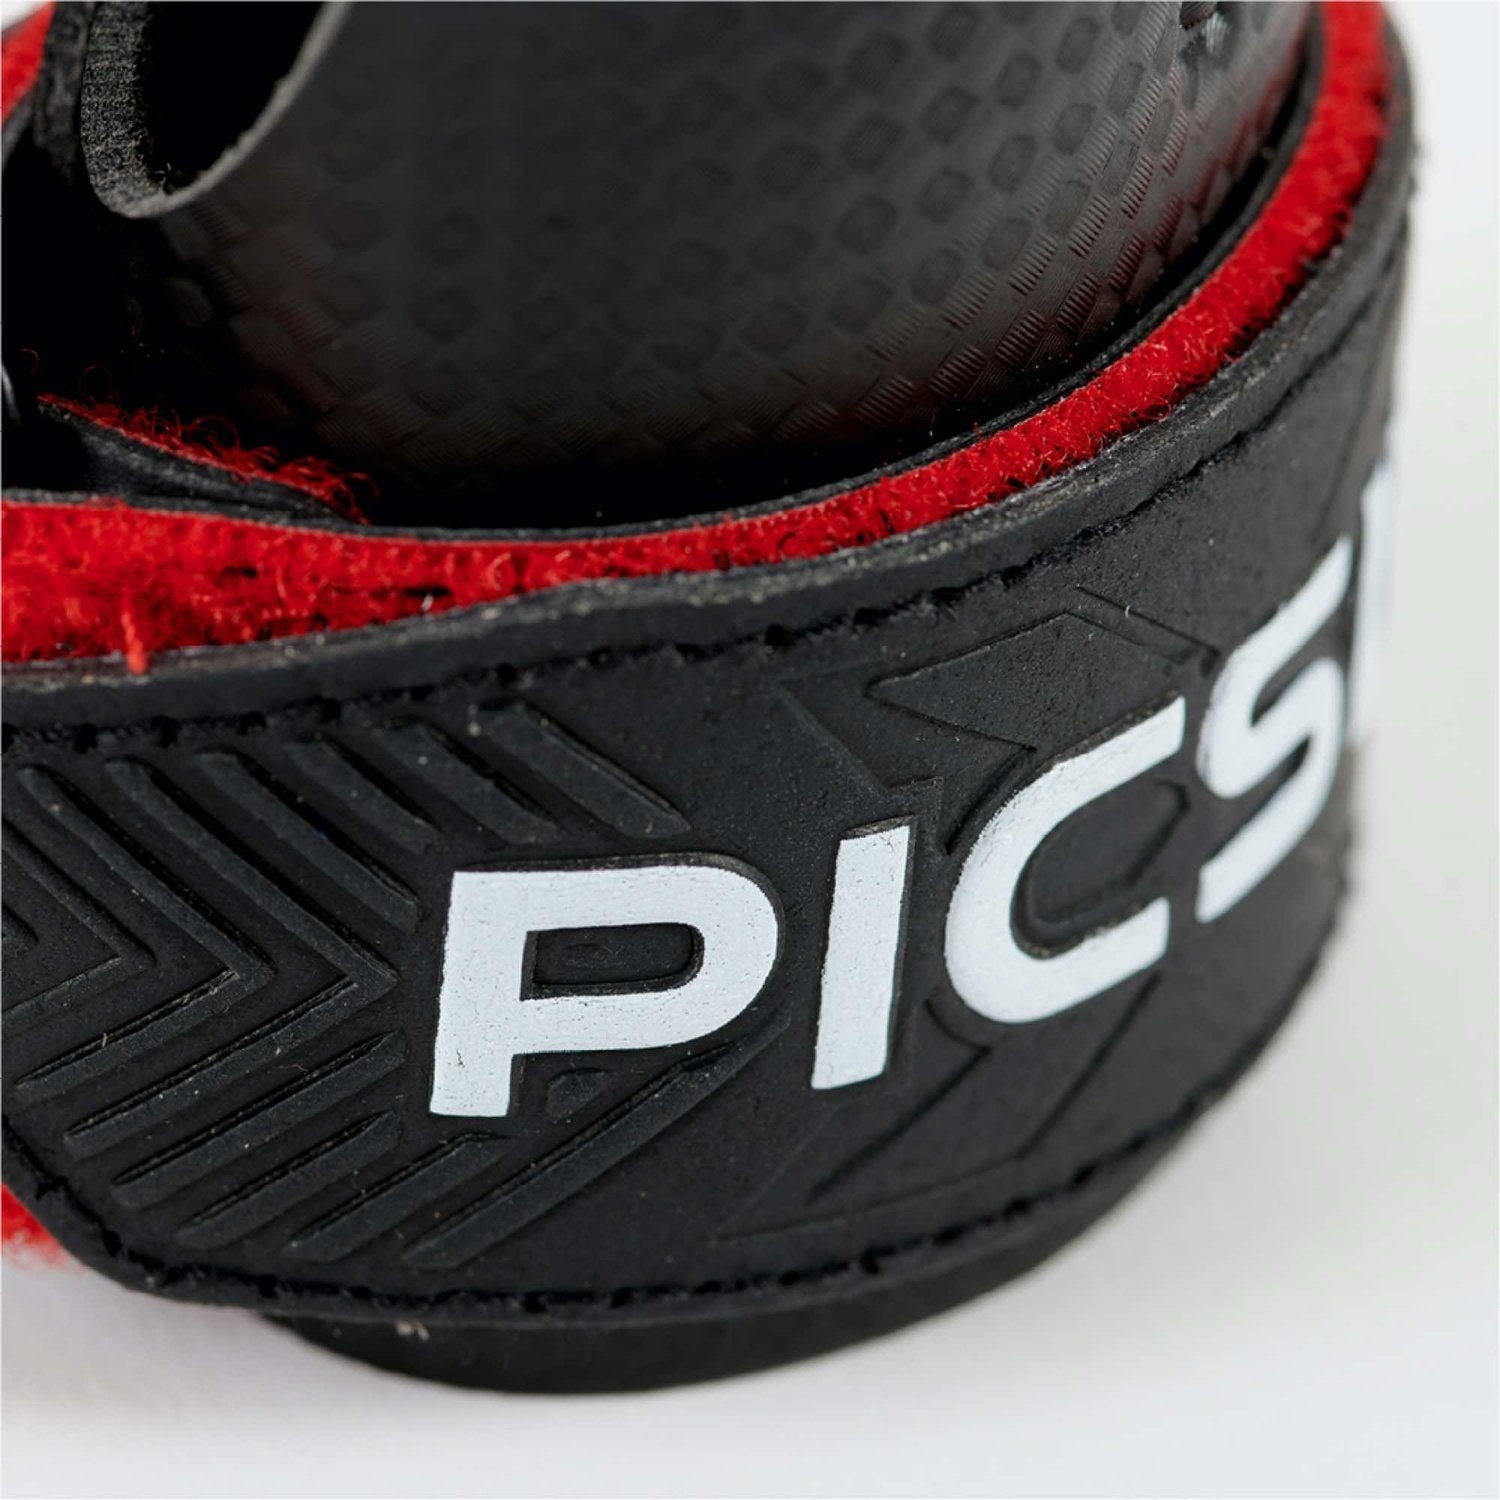 PicSil RX Grips (ohne Löcher) kaufen bei HighPowered.ch